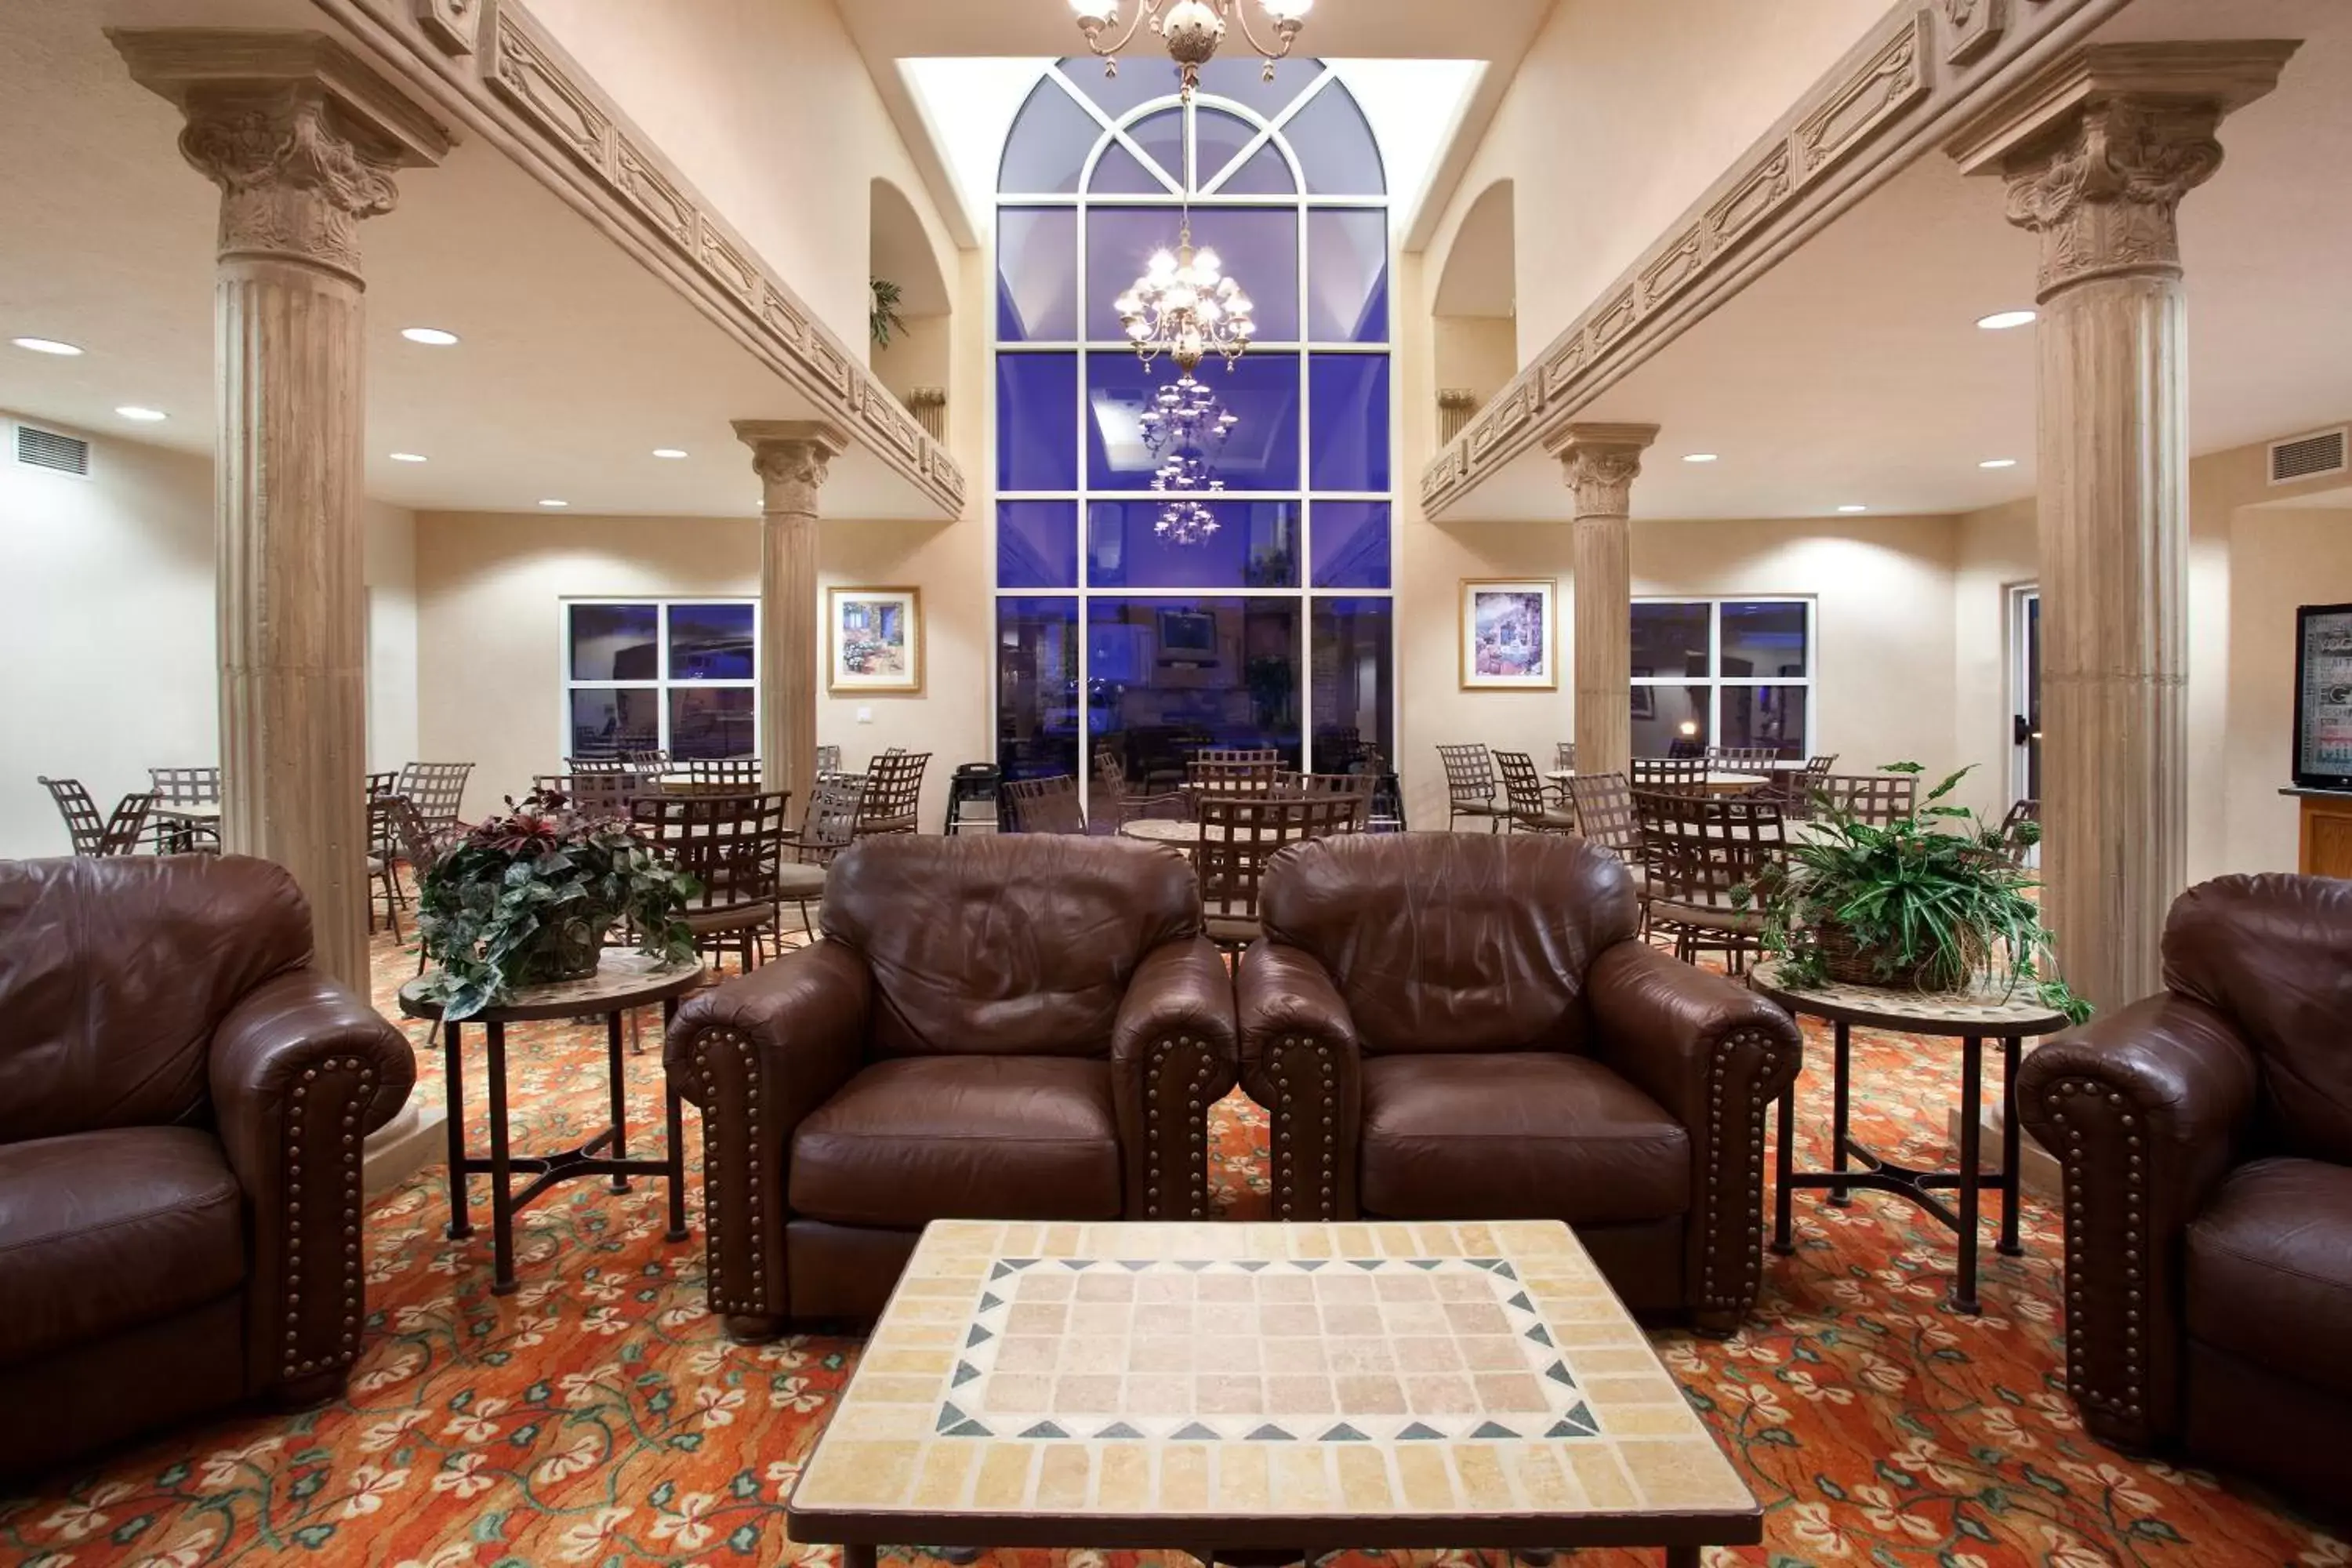 Lobby or reception, Lobby/Reception in Baymont by Wyndham Belen NM